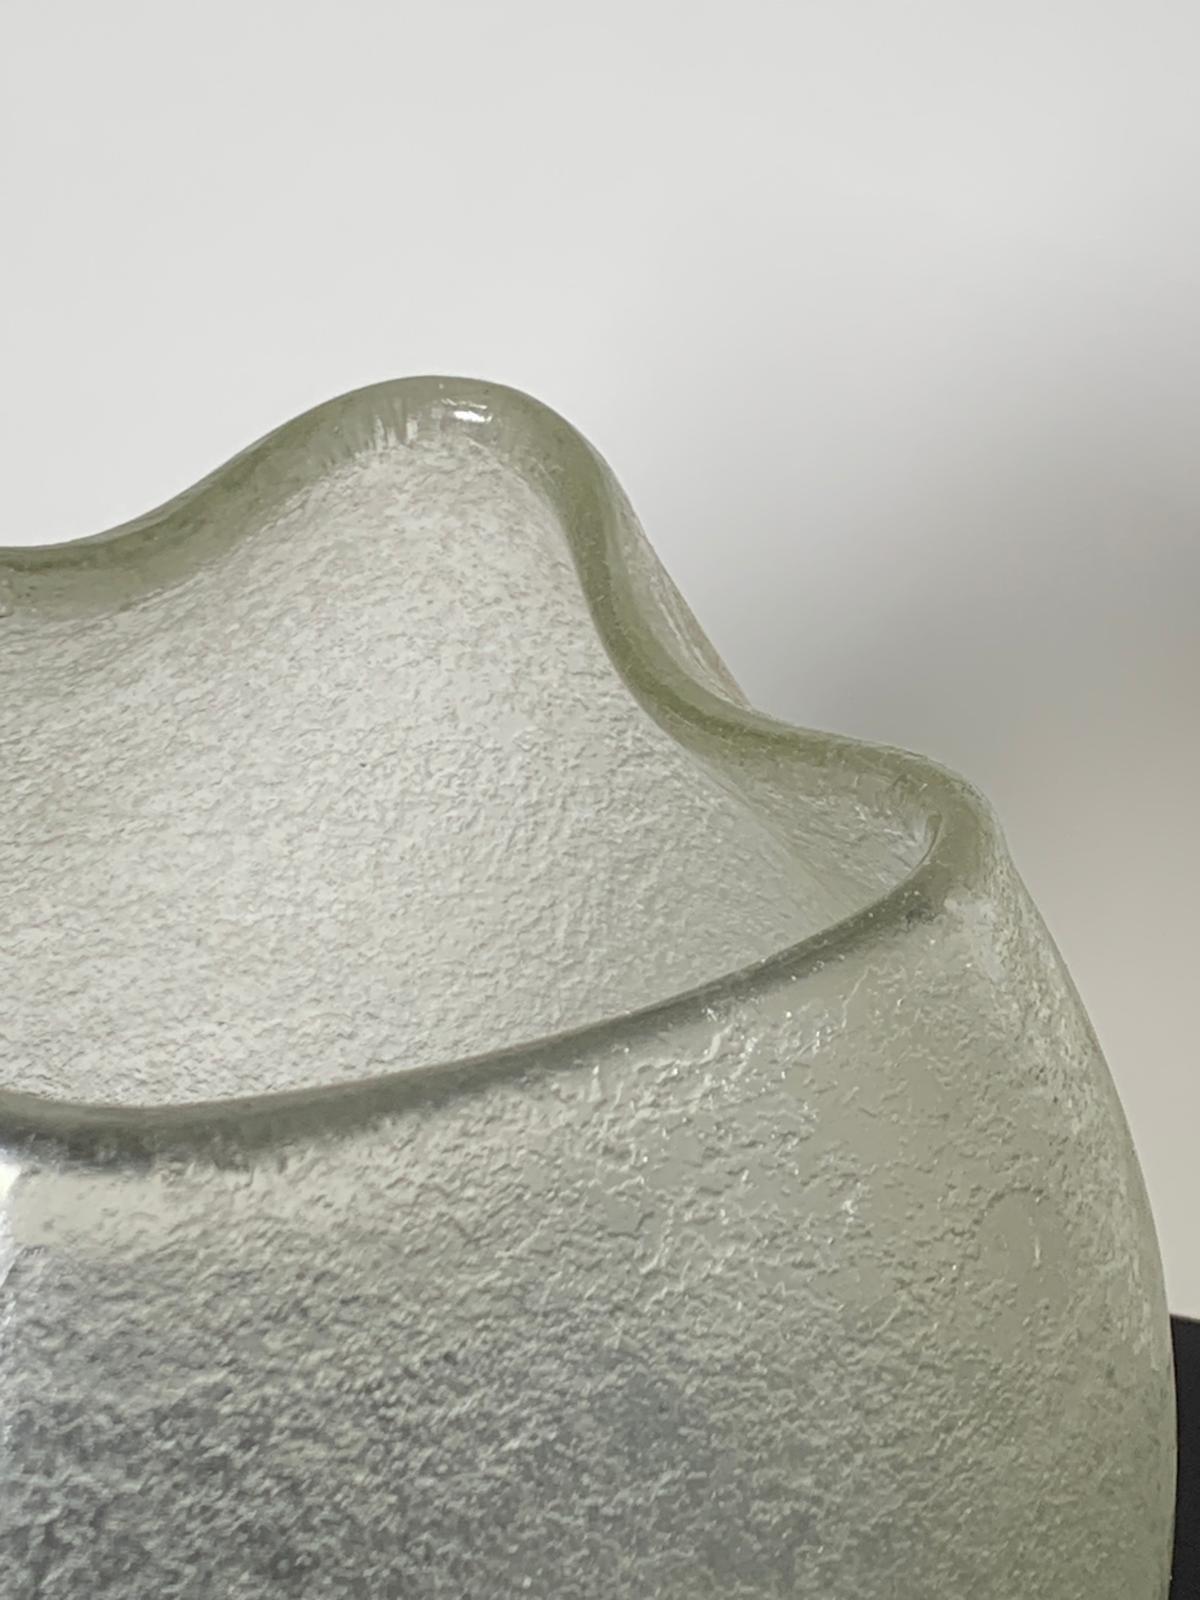 Italian Murano Glass Vase Corrosi Series by Flavio Poli for Seguso Vetri d'Arte For Sale 4